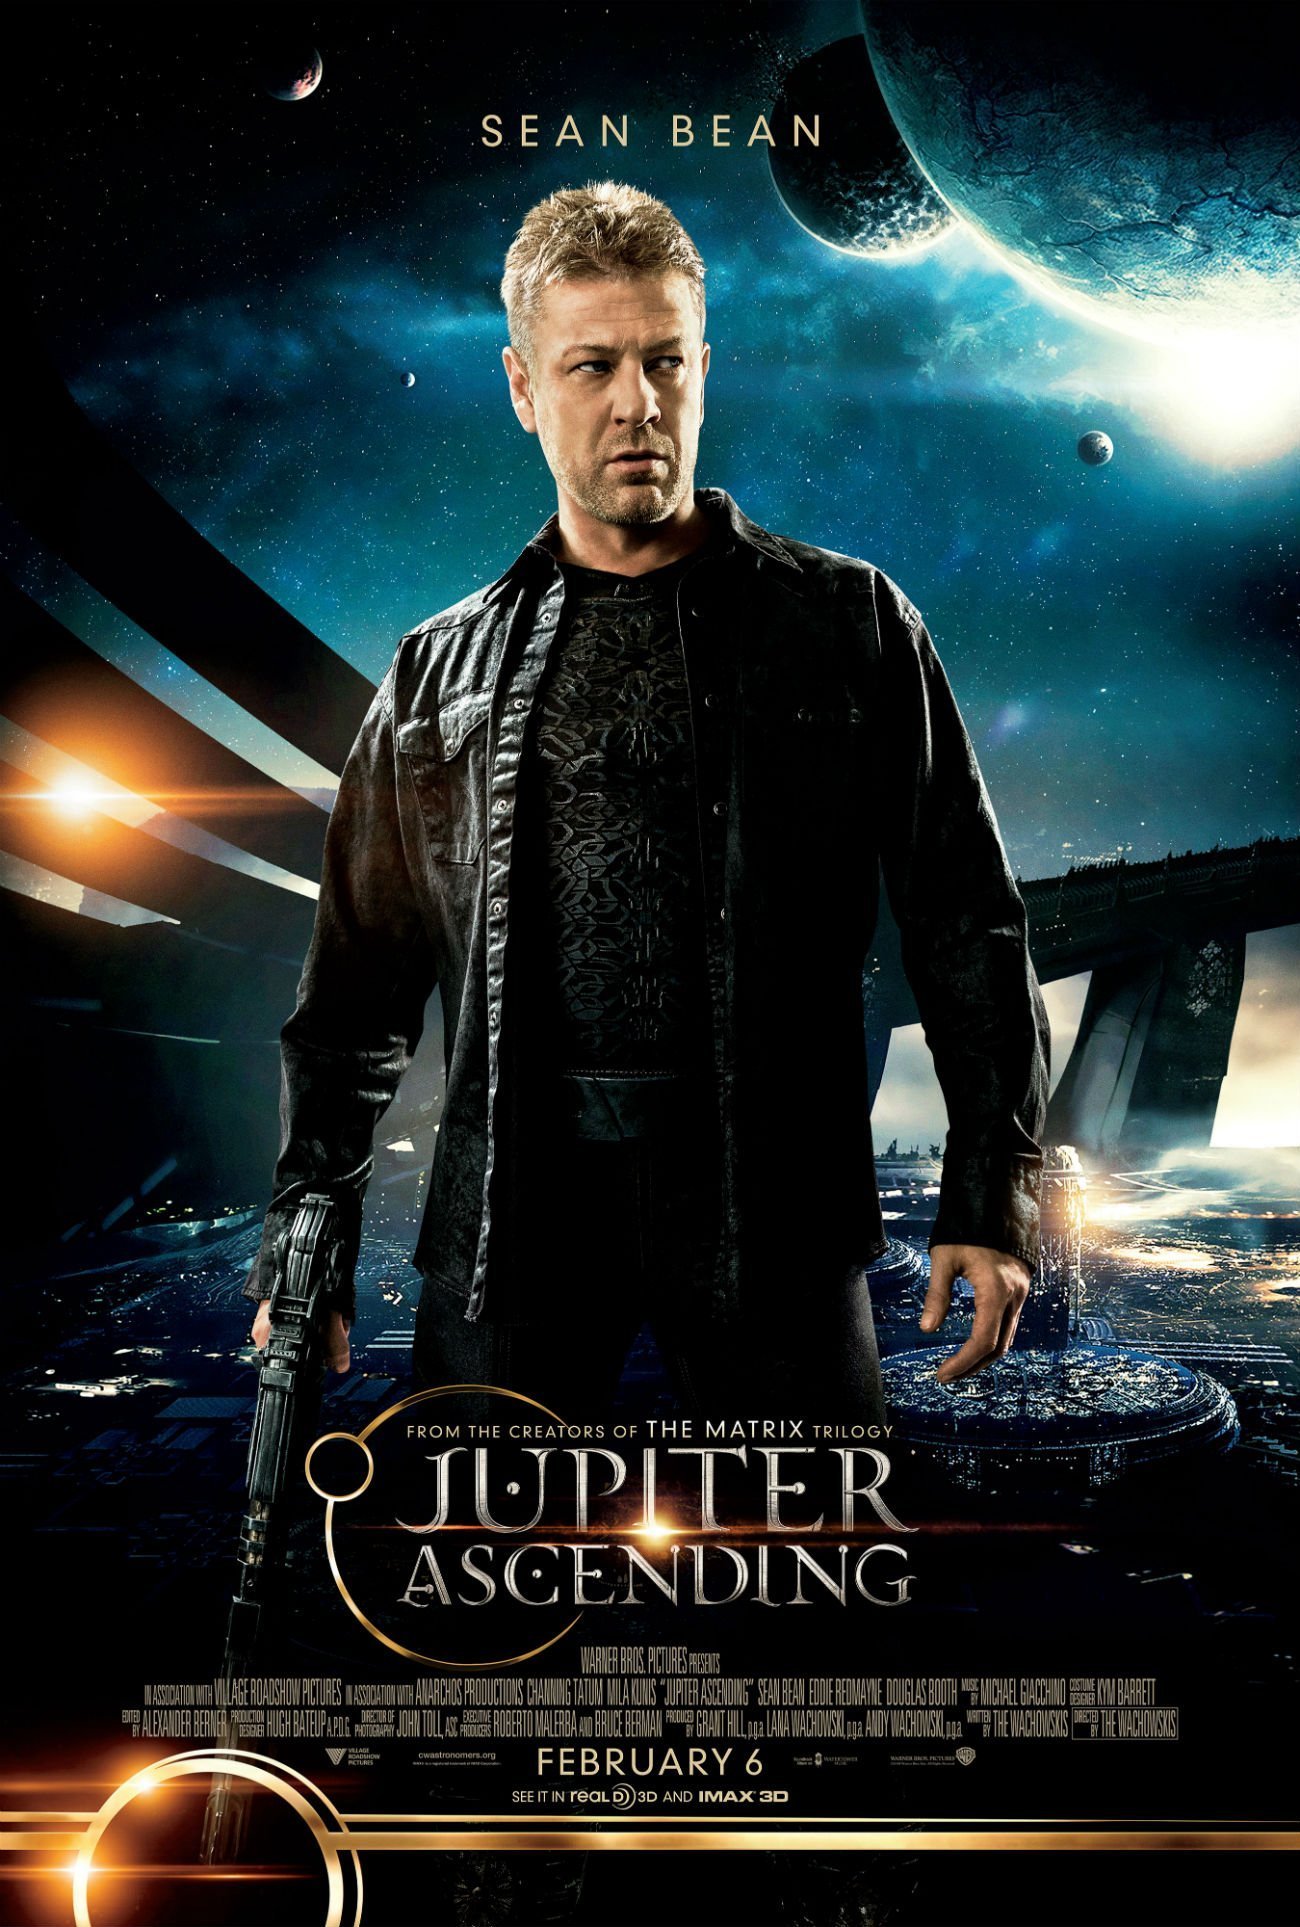 Poster du film Jupiter: Le Destin de l’univers réalisé par Andy Wachowski, Lana Wachowski avec Sean Bean